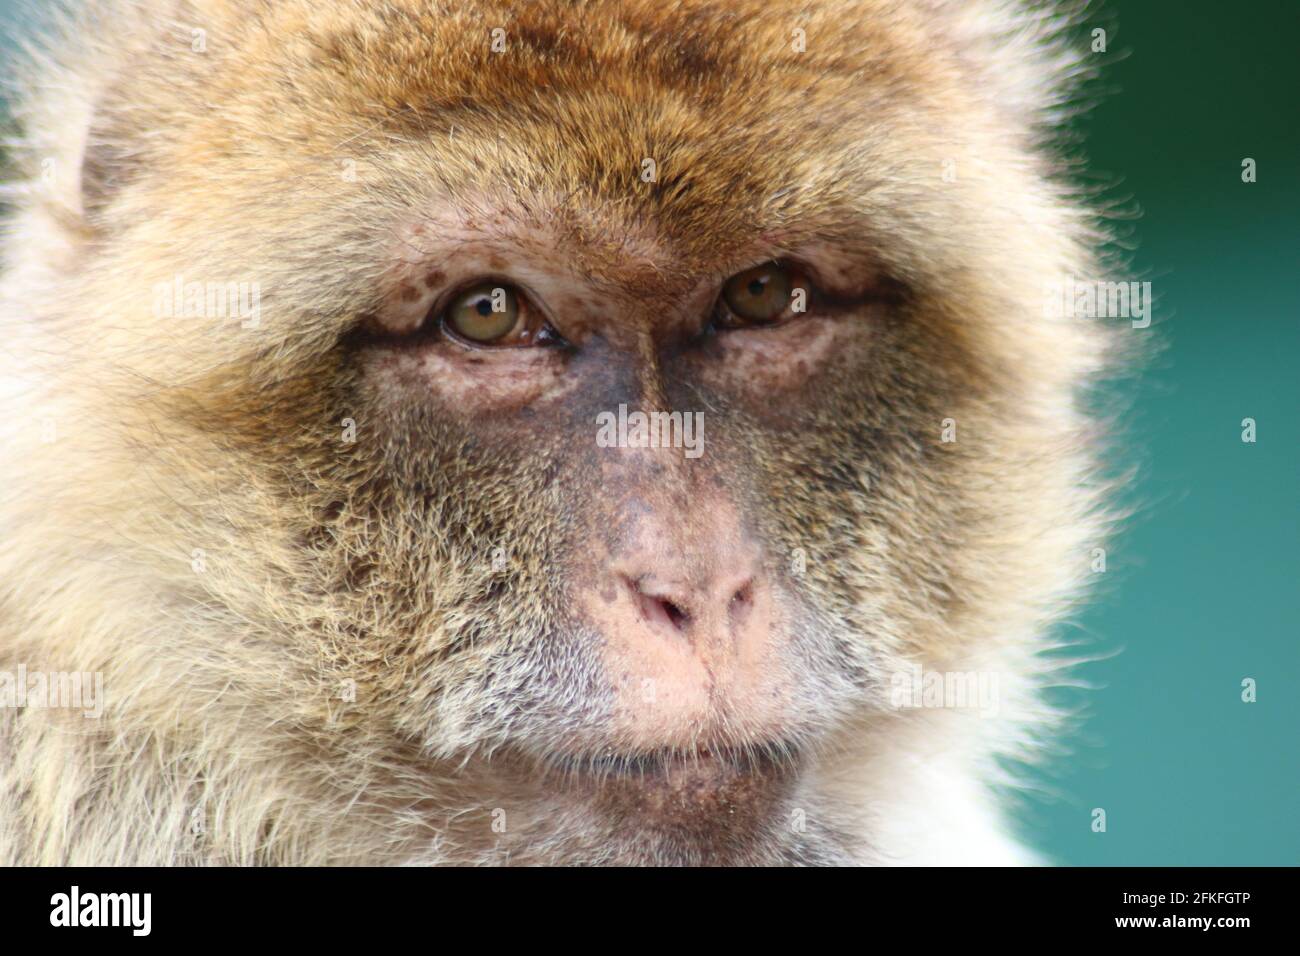 Monkey/ Berberaffe sieht sehr ernst und menschlich aus Stock Photo